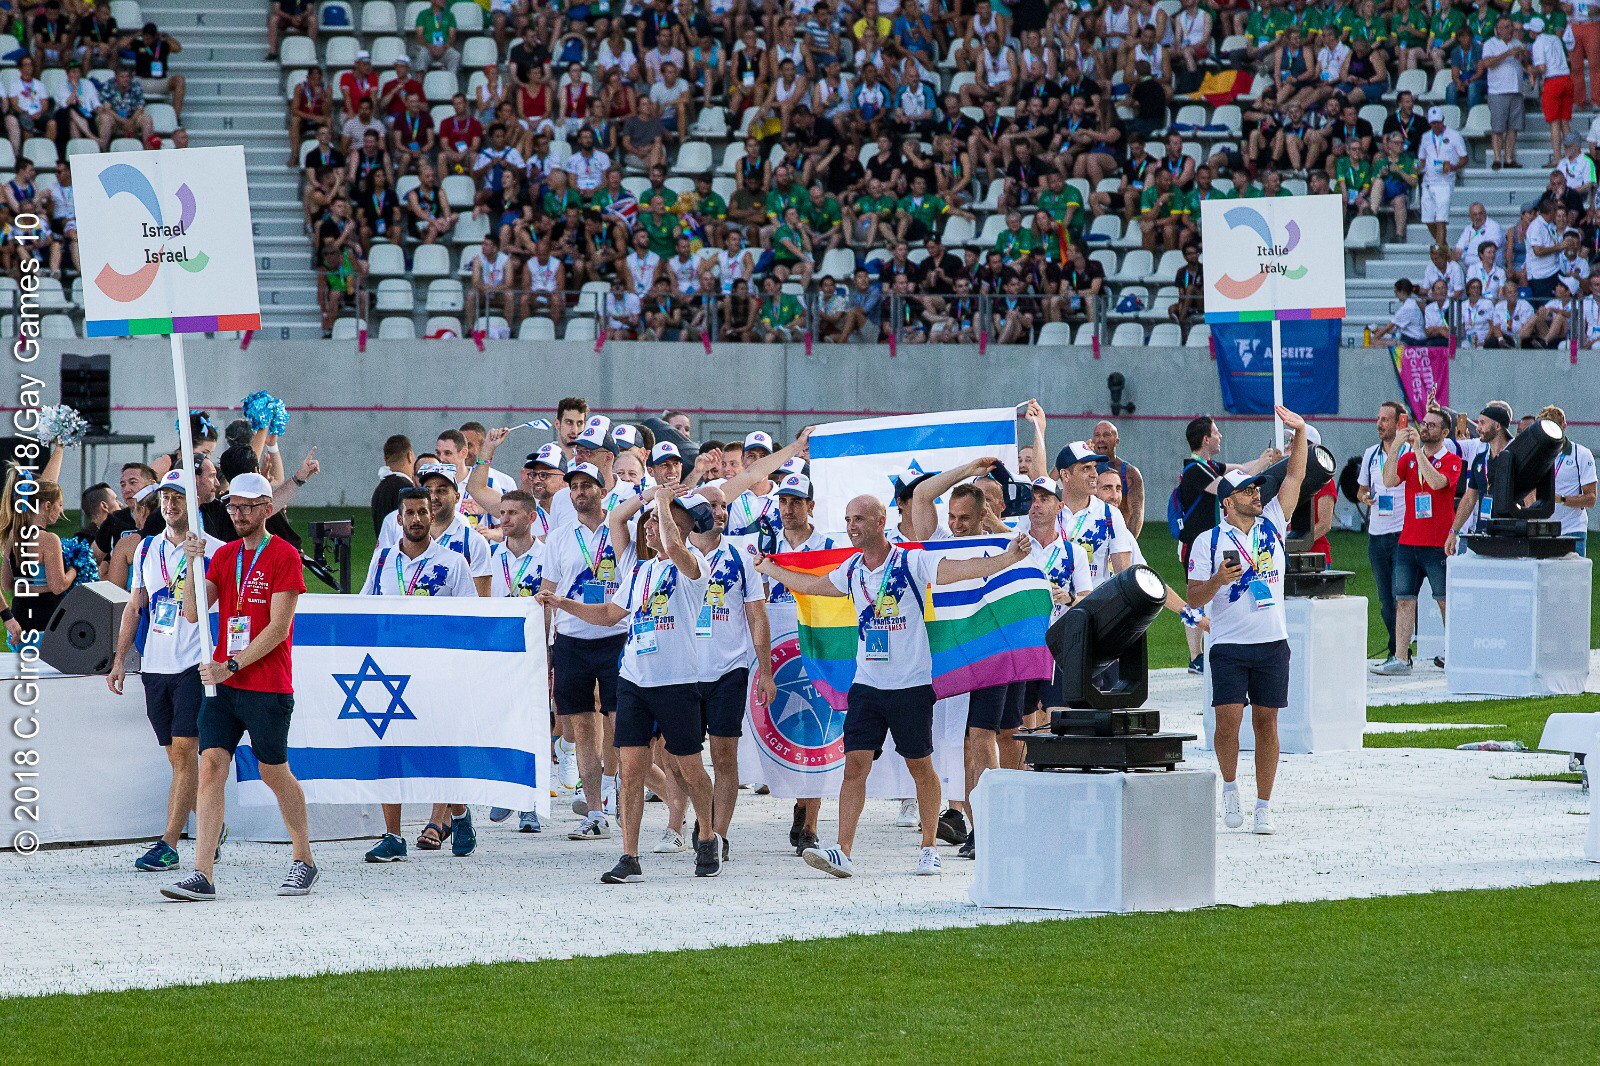 LGBTQ Sports Club, Israel, Impact Grants